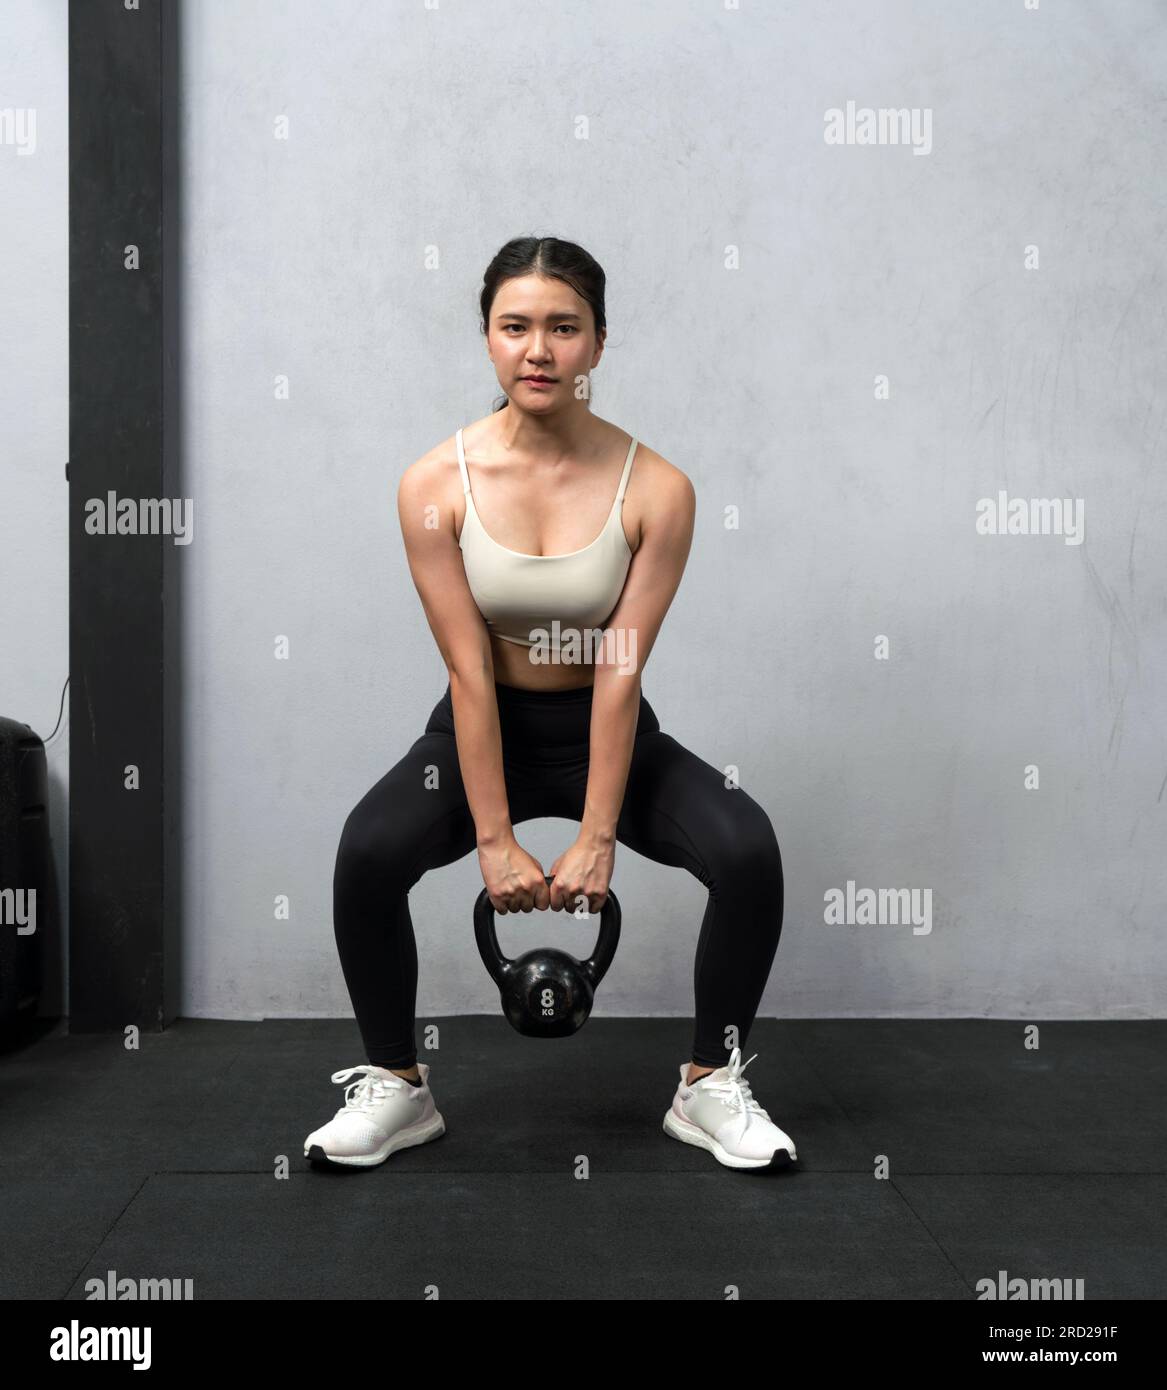 Die junge asiatische Frau tritt in einem gut ausgestatteten Fitnessraum mit Kugelhantel auf. Ihre sportliche Form ist der Inbegriff ausgewogener Kraft und Ausdauer. Sie greift sich einen Krankenwagen an Stockfoto